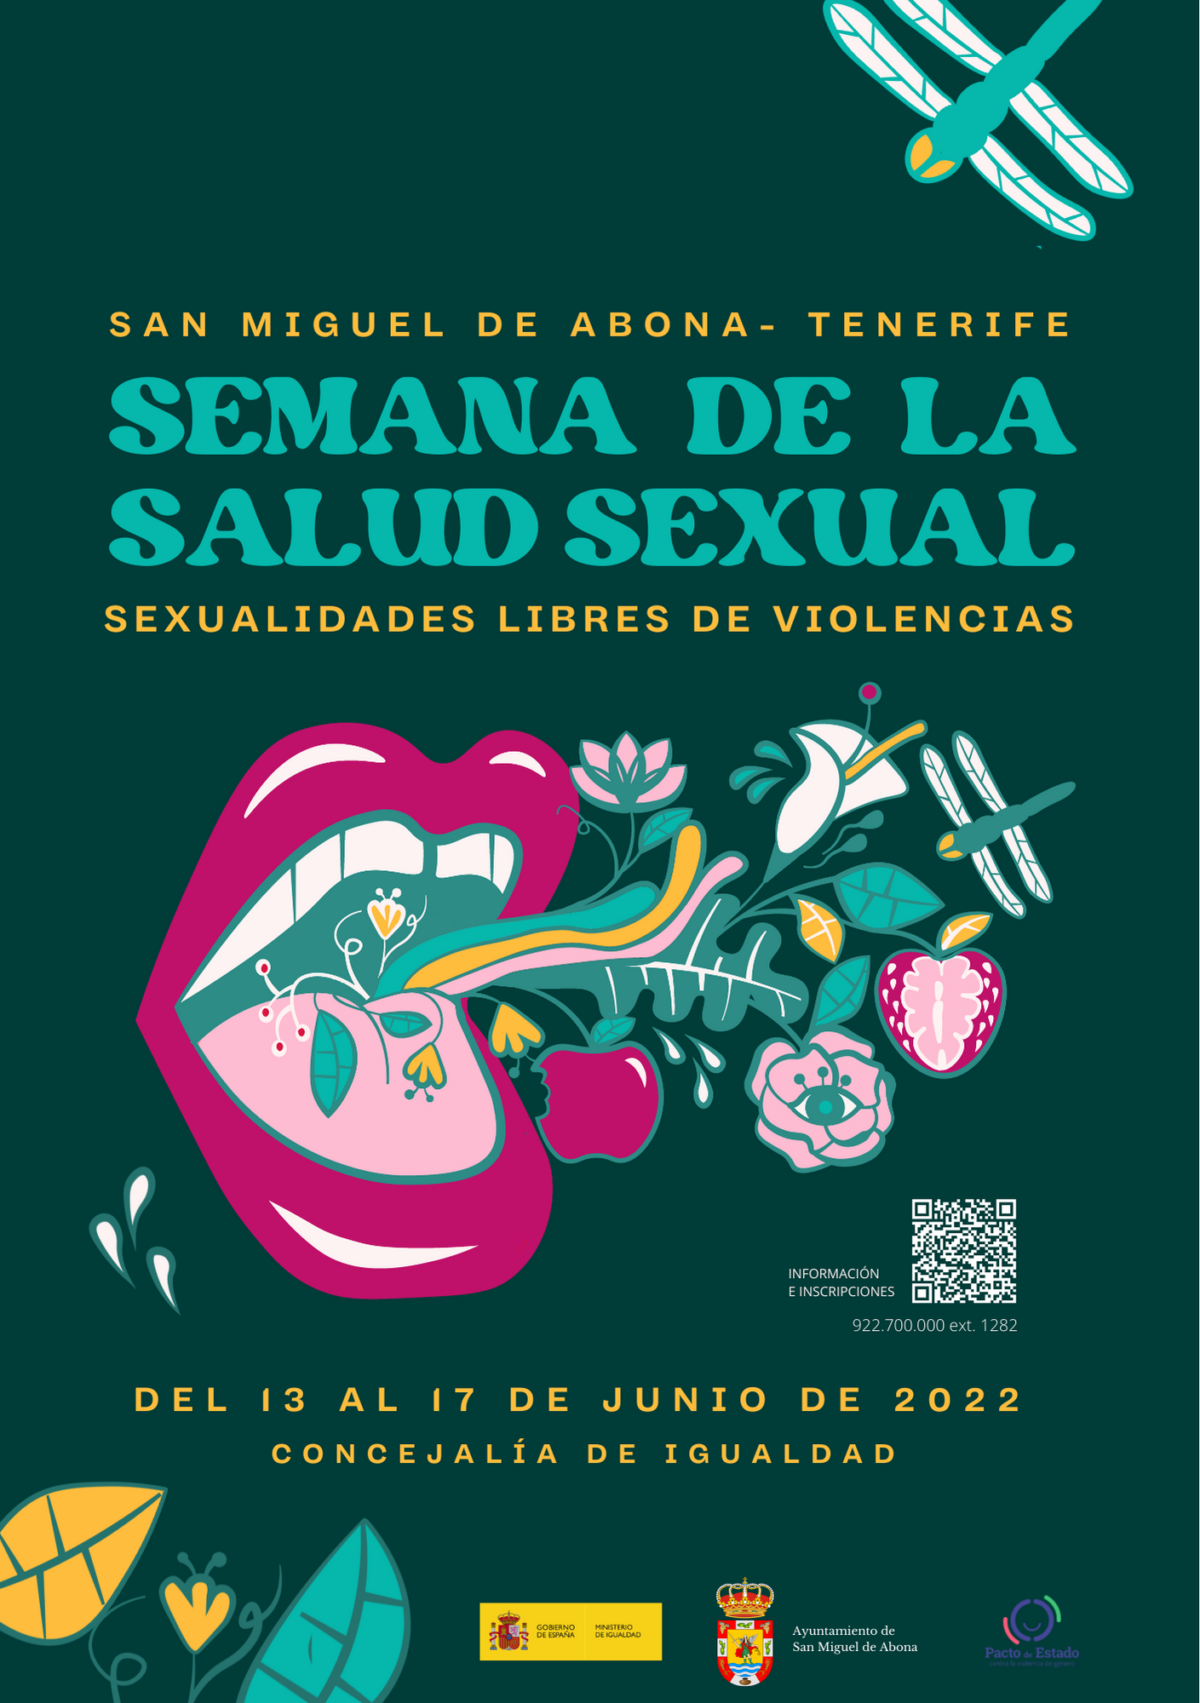 Semana de la Salud Sexual: Sexualidades libres de violencias